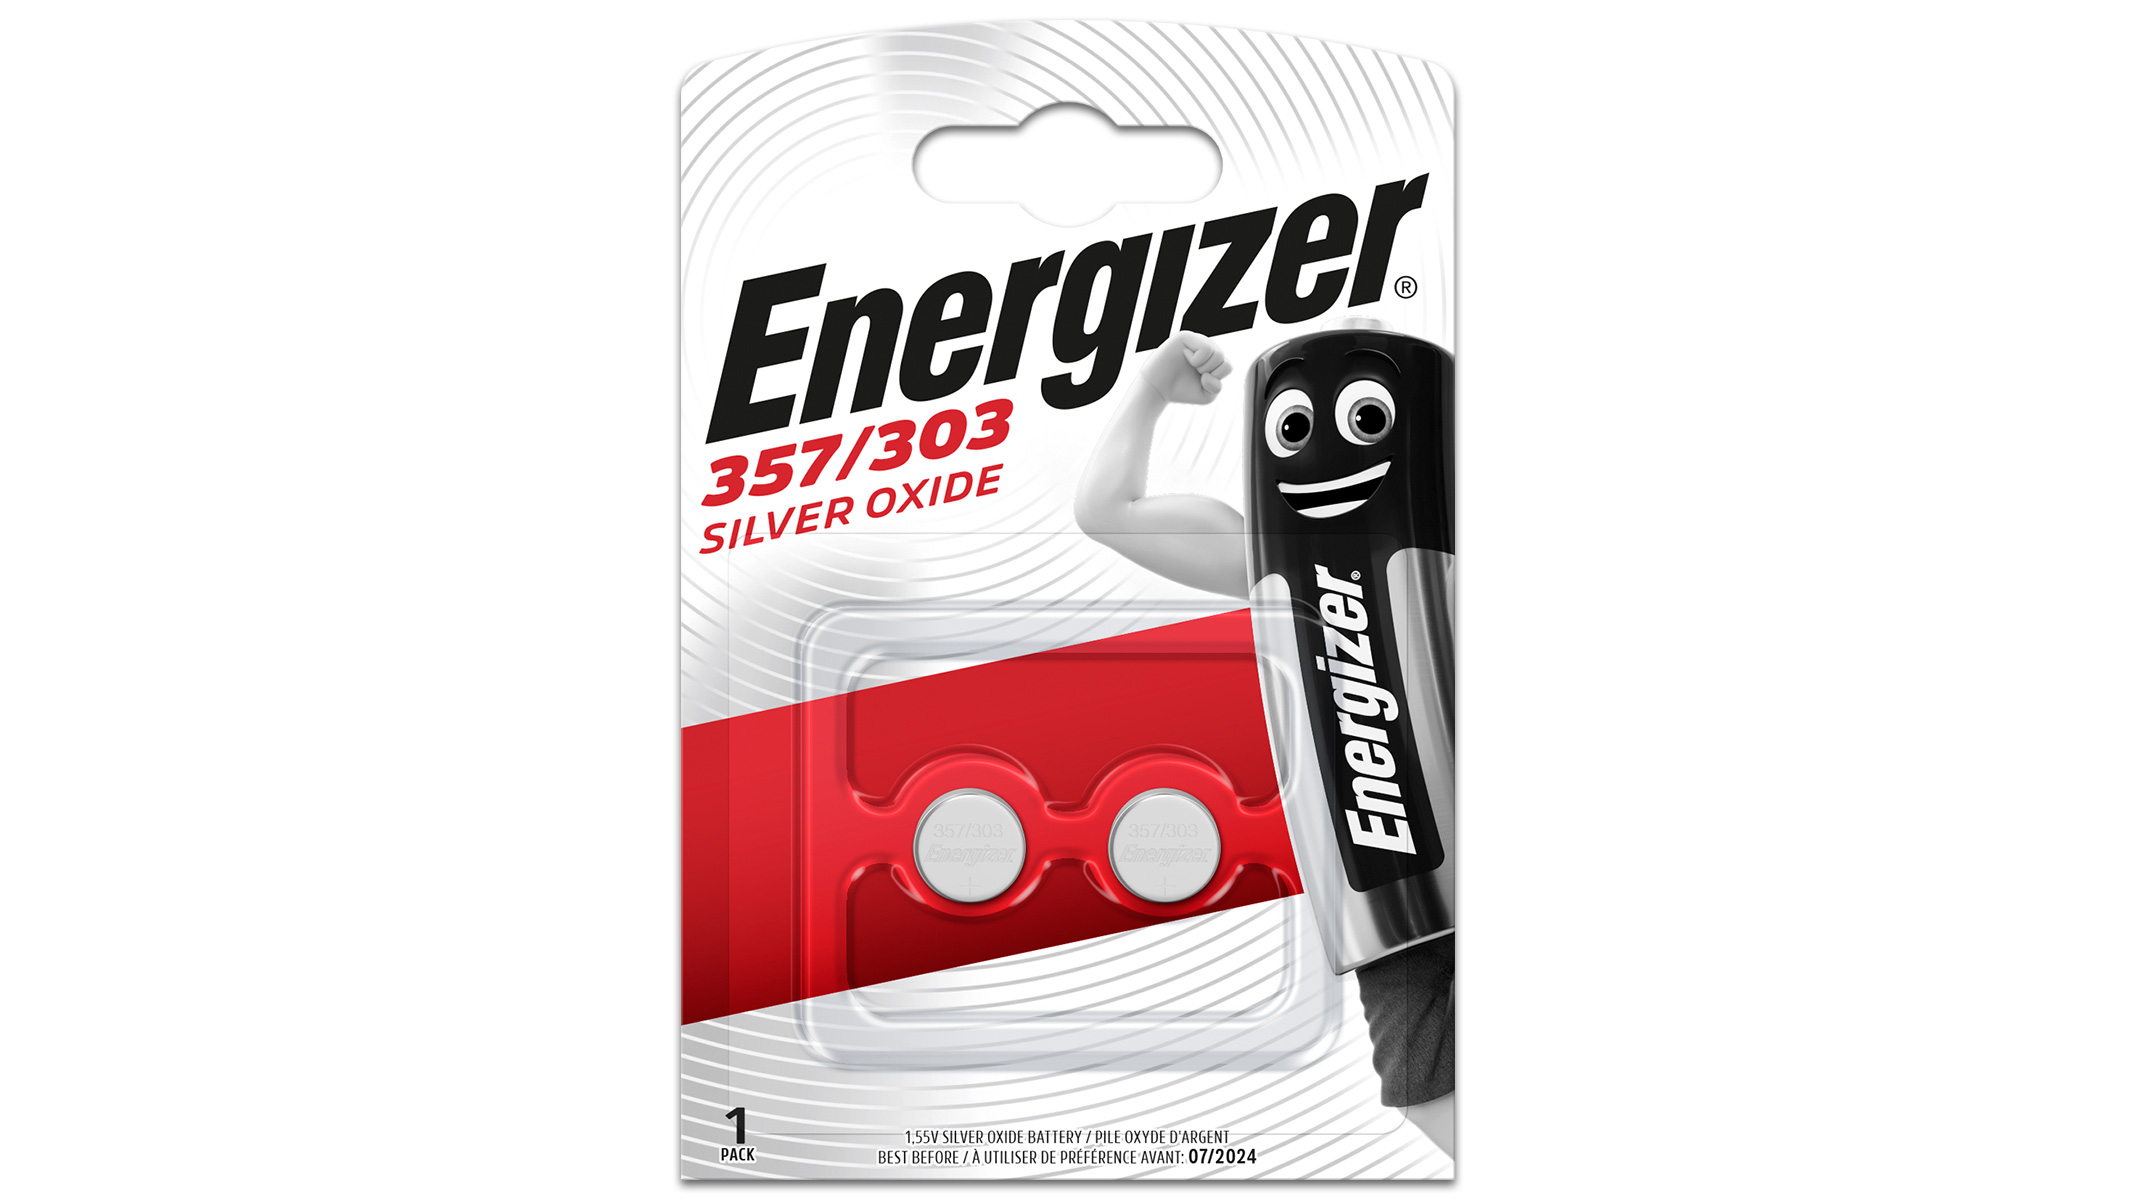 2er Blister Energizer Batterien (SR44/357/303)